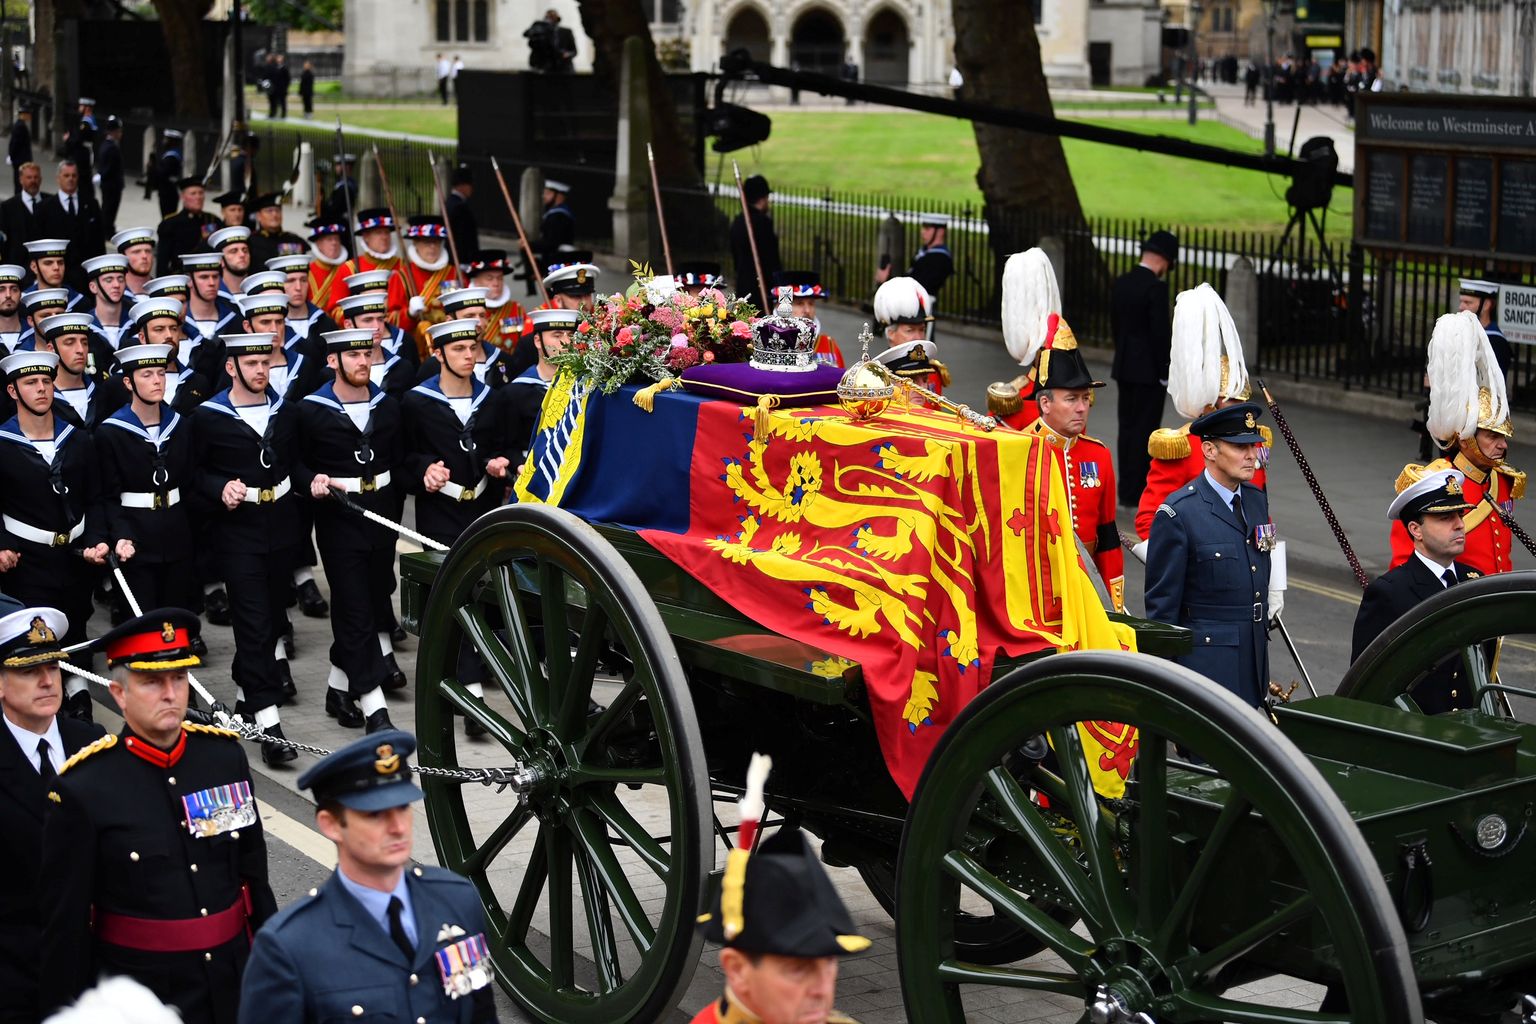 Briti kuninganna Elizabeth II kirst liikumas 19. septembril 2022 läbi Londoni Westminster Abeysse, kus toimus matuseteenistus